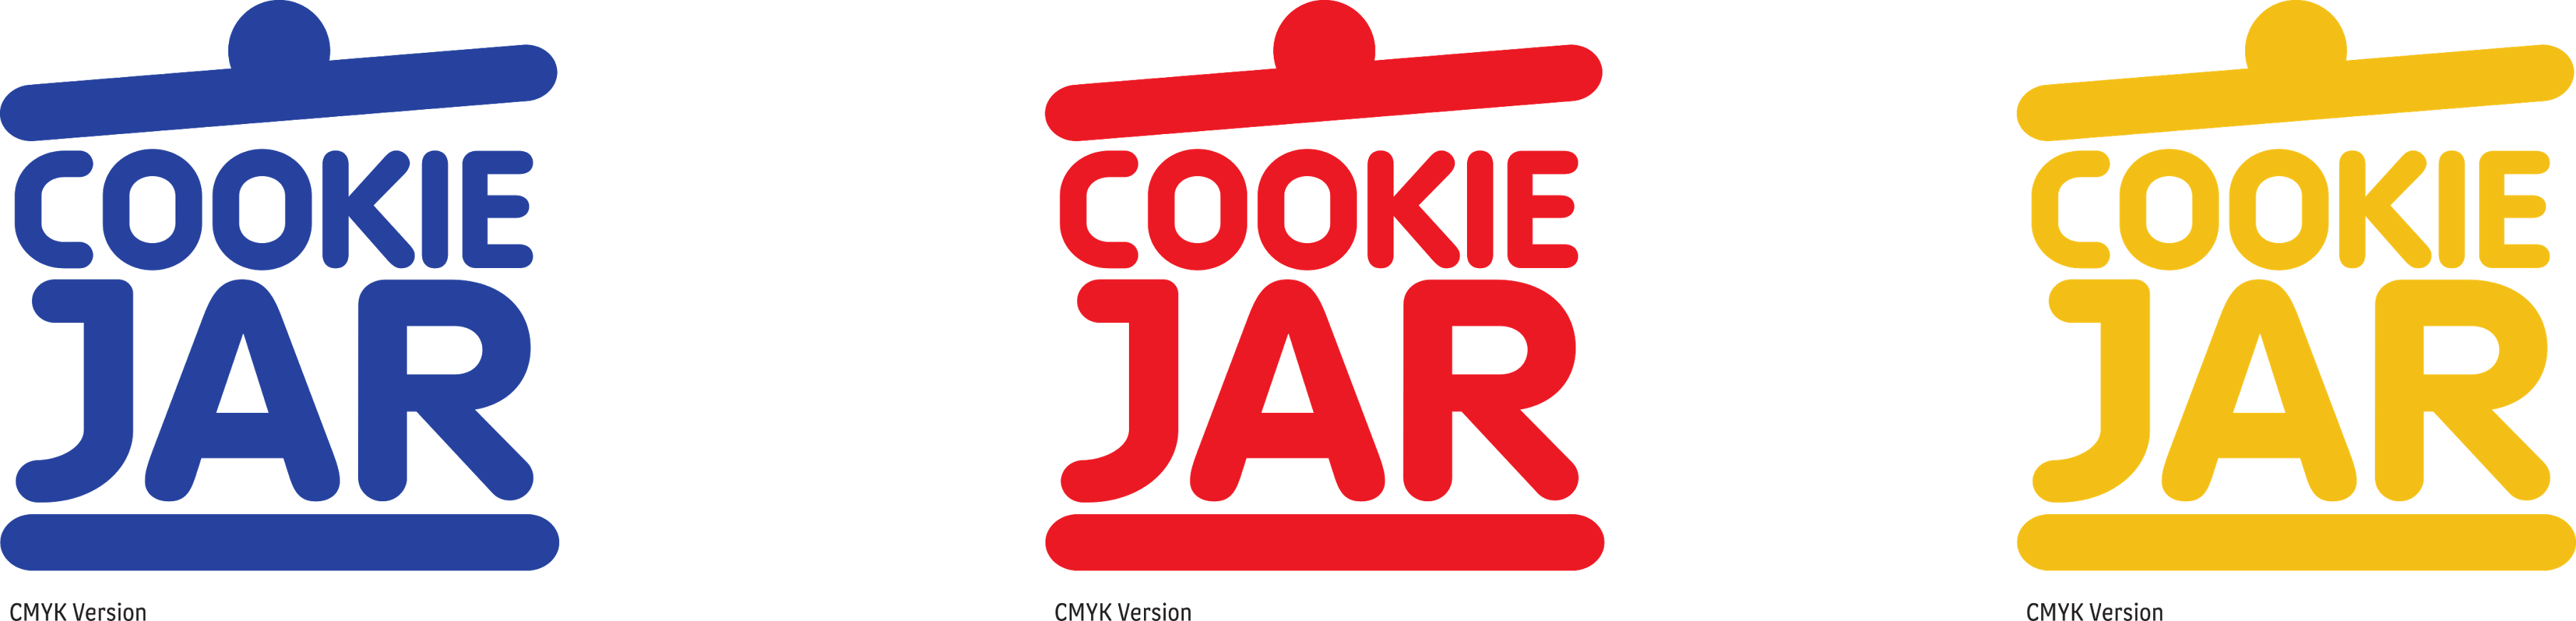 Hull cookie jar